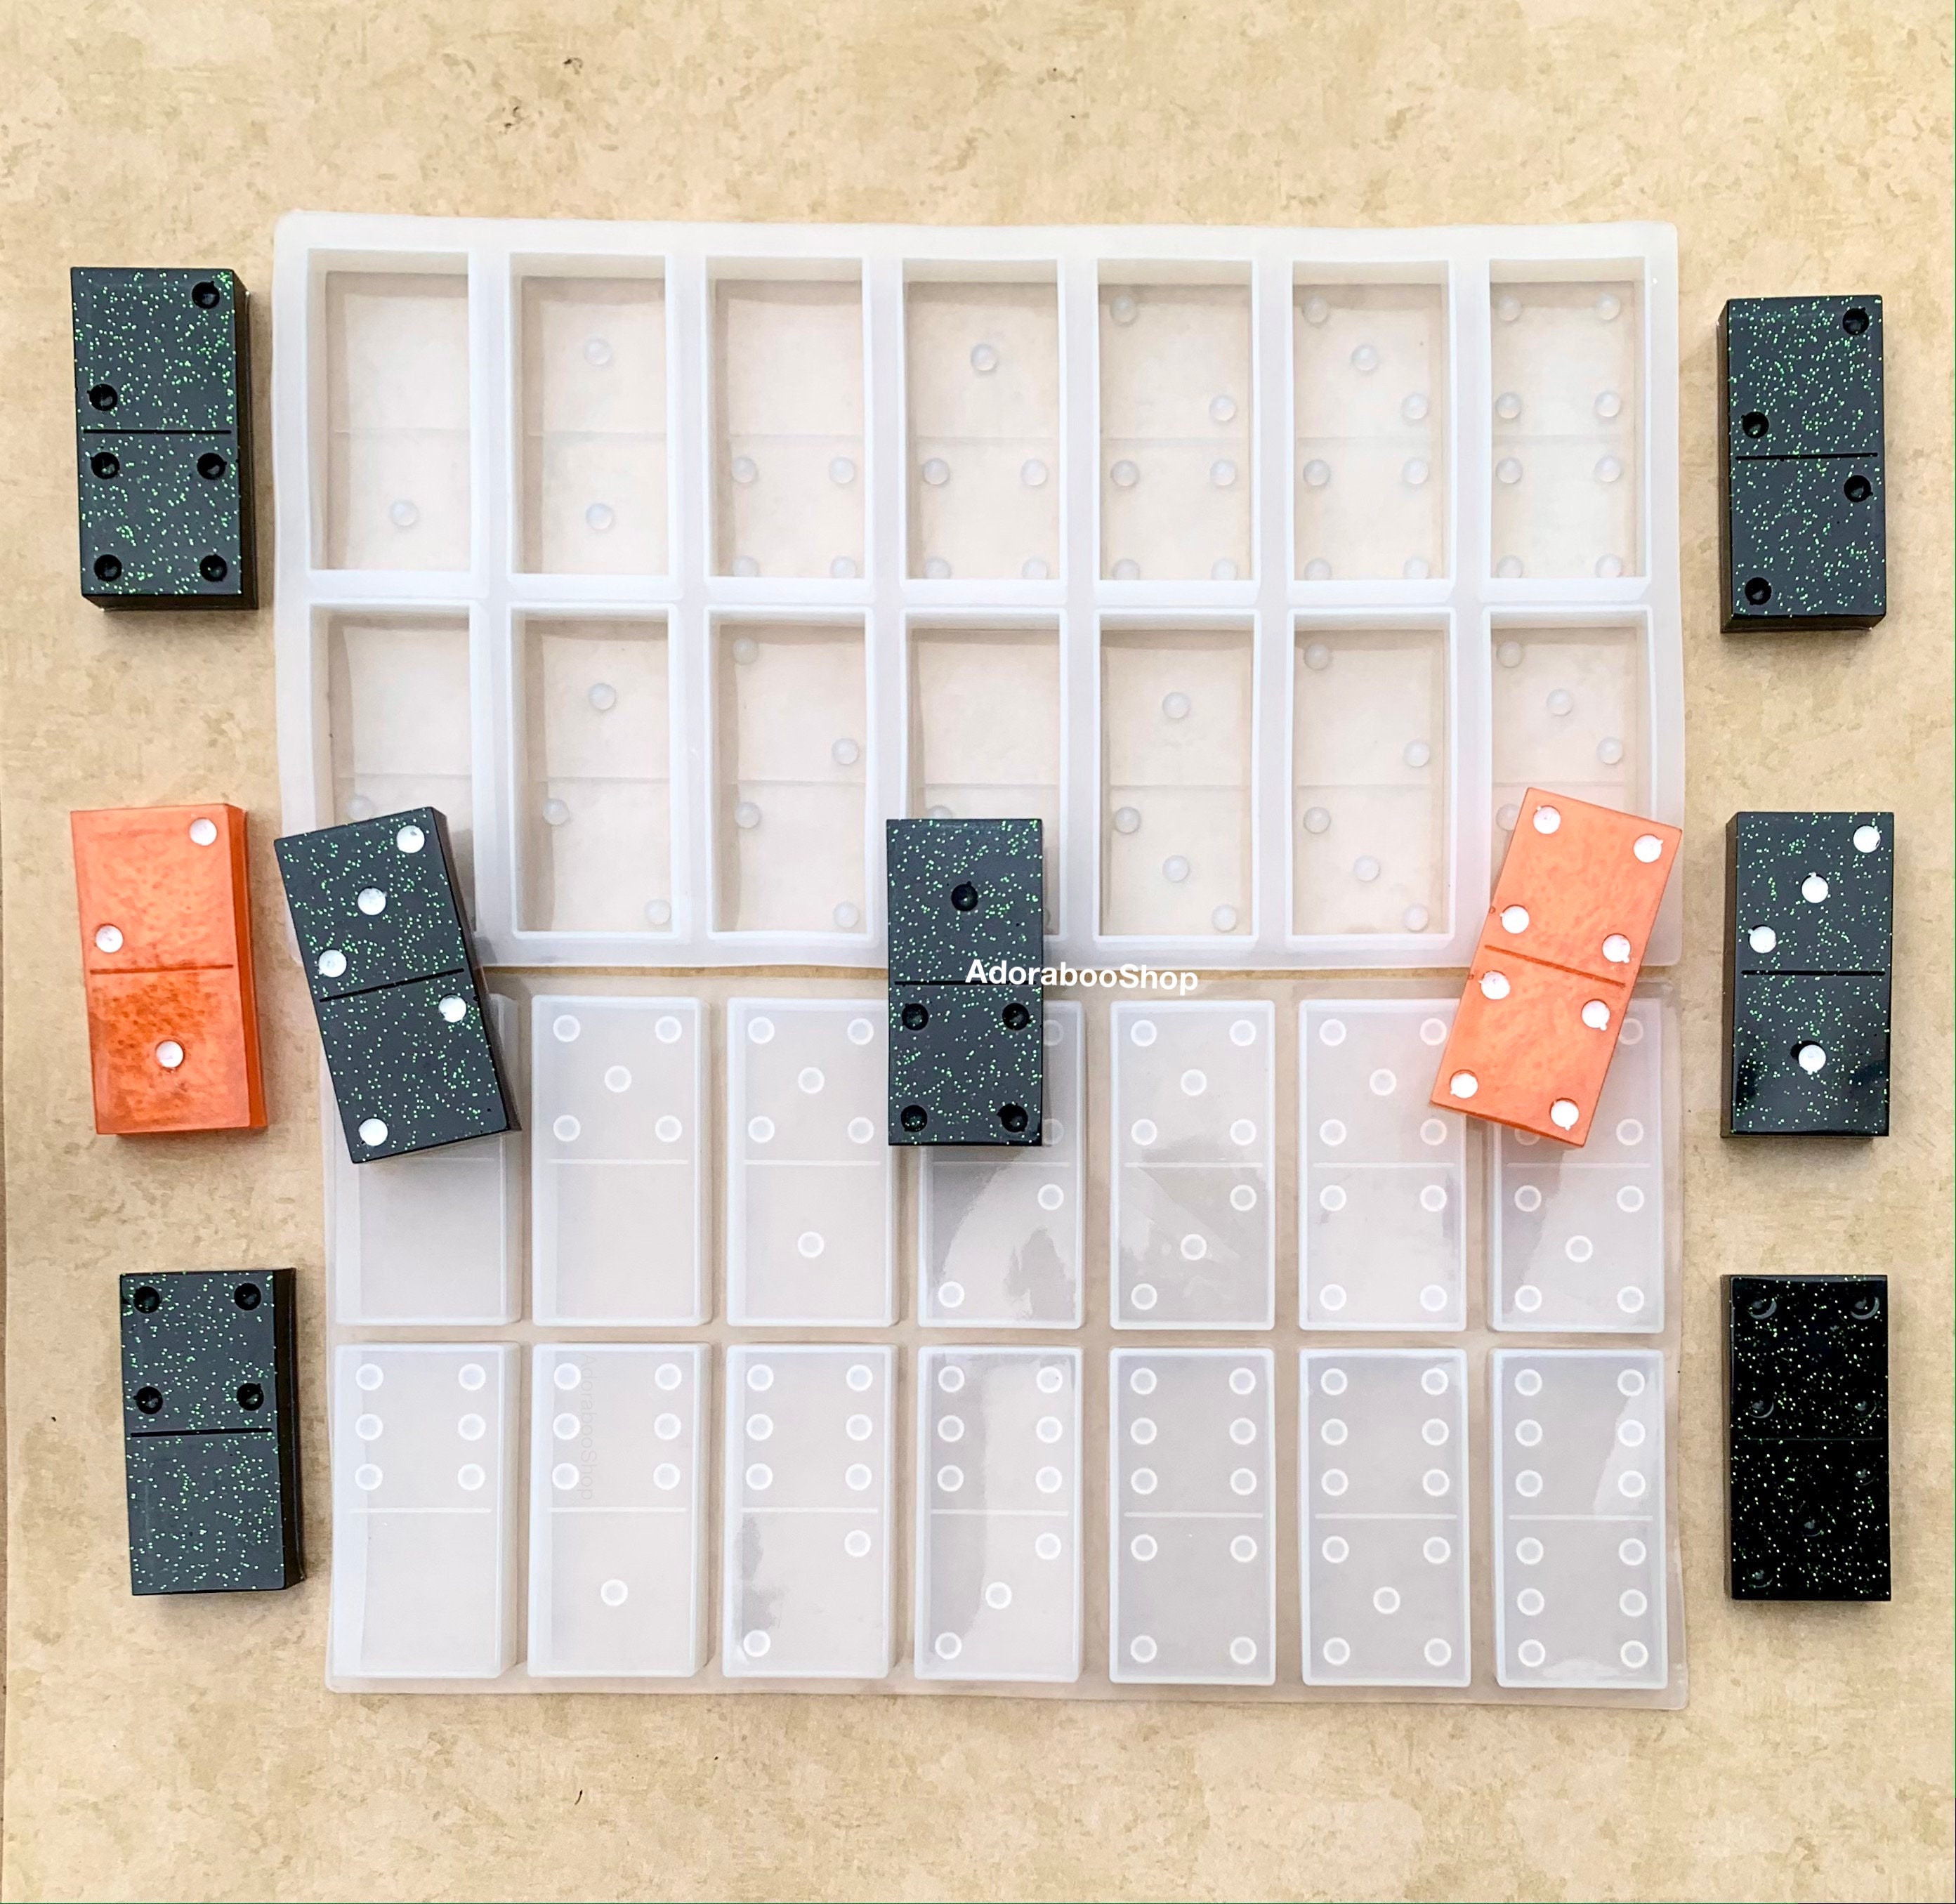 Creative Domino Resin Mold-dominos Silicone Mold-epoxy Resin Domino  Mold-silicone Mold for Resin Dominos Diy-board Game Silicon Mold 